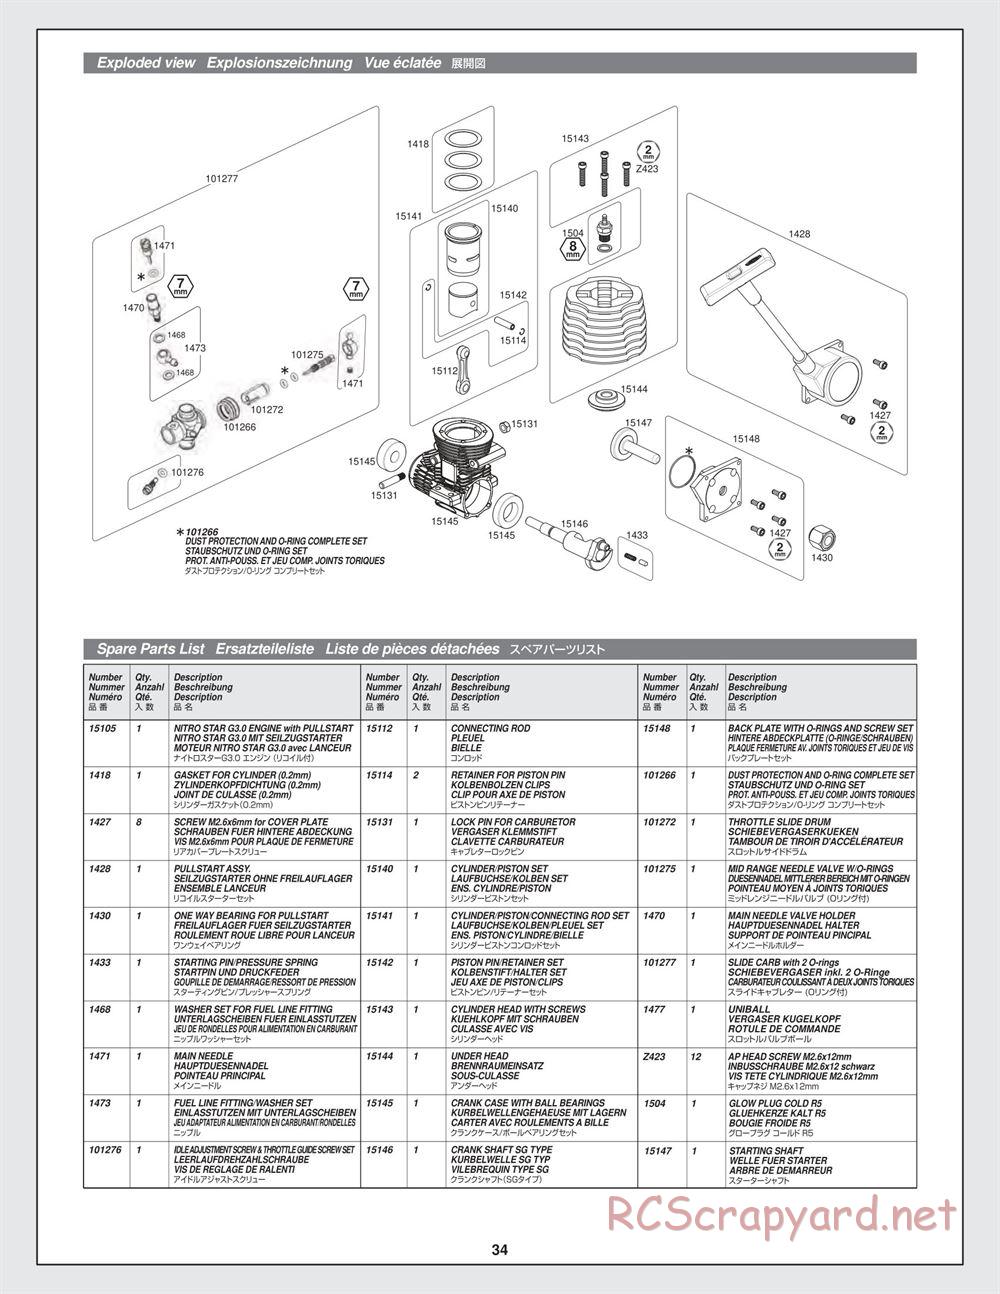 HPI - Bullet ST 3.0 - Manual - Page 34